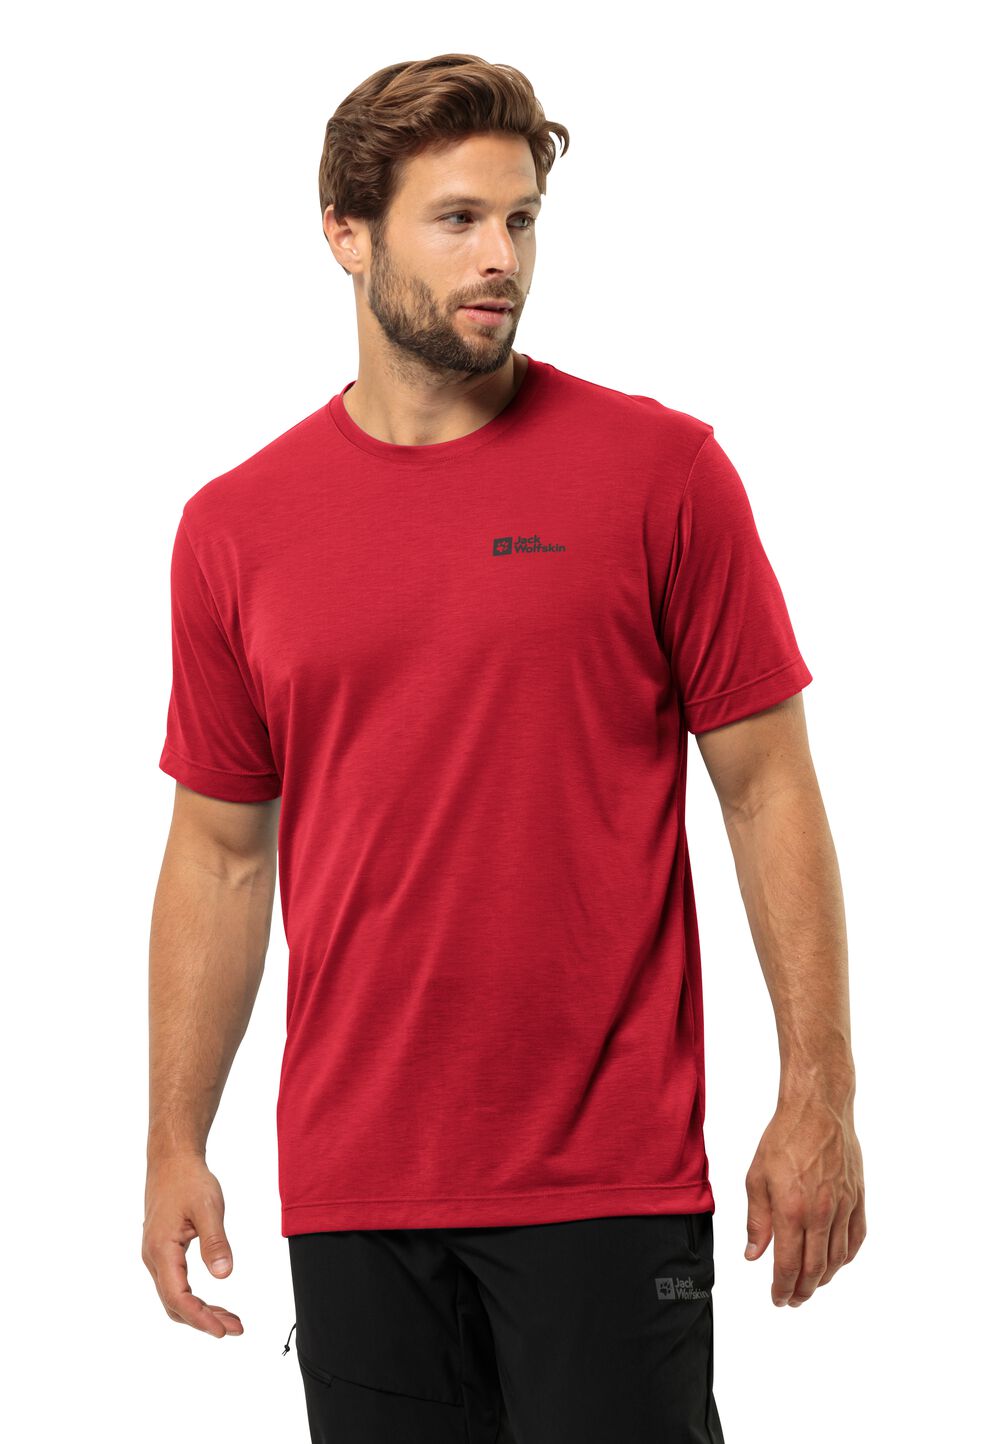 Jack Wolfskin Vonnan S S T-Shirt Men Functioneel shirt Heren M rood red glow